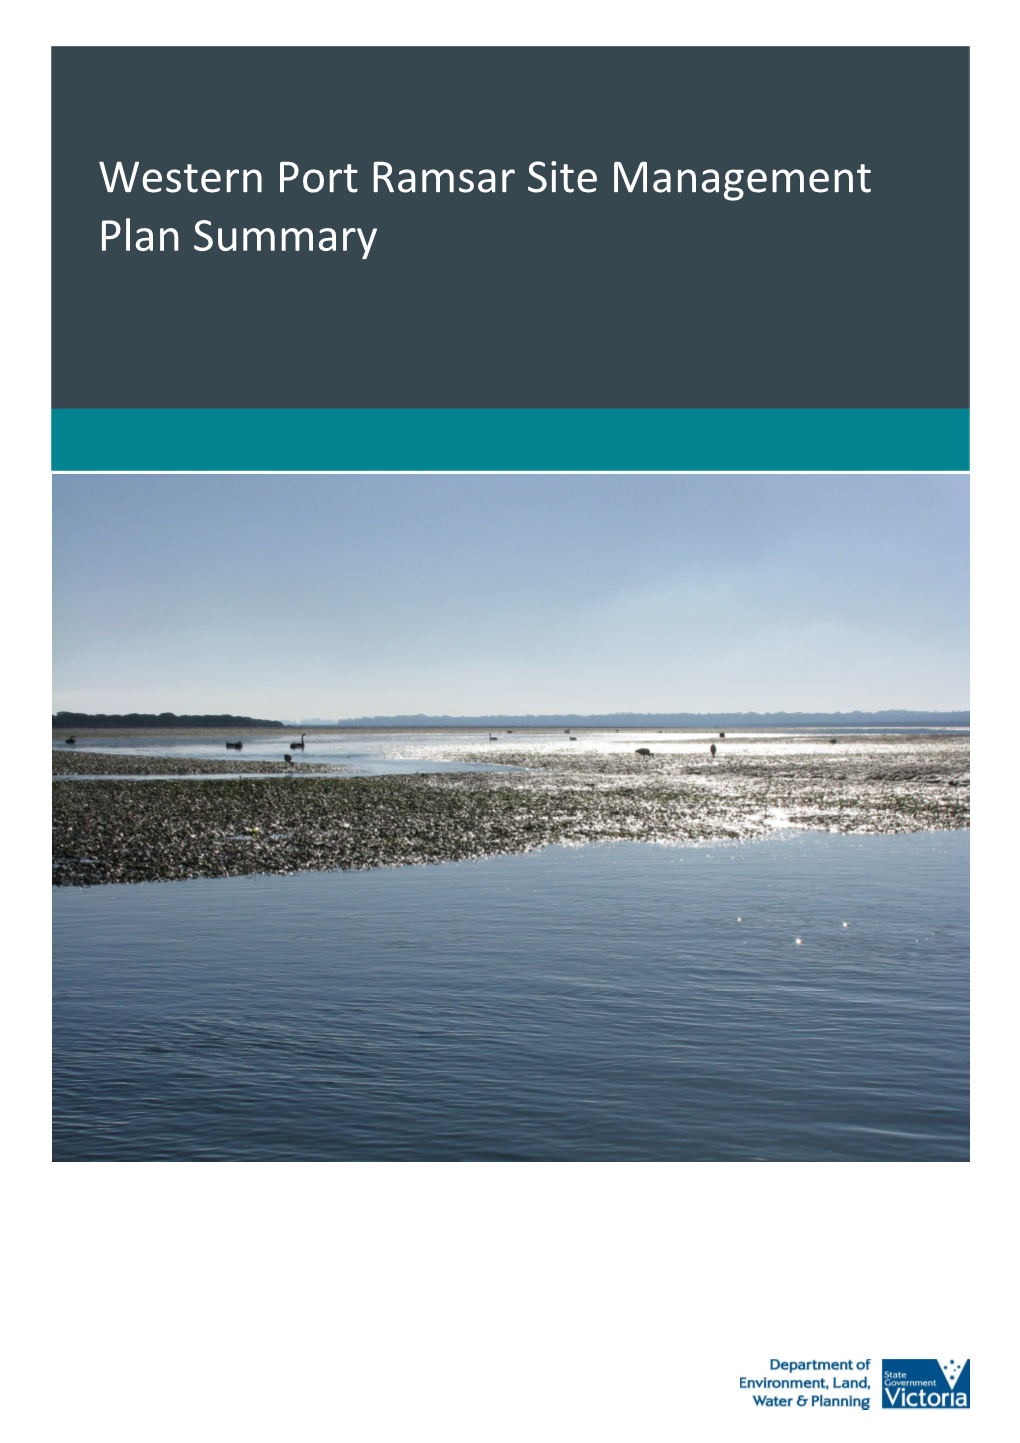 Western Port Ramsar Site Management Plan Summary